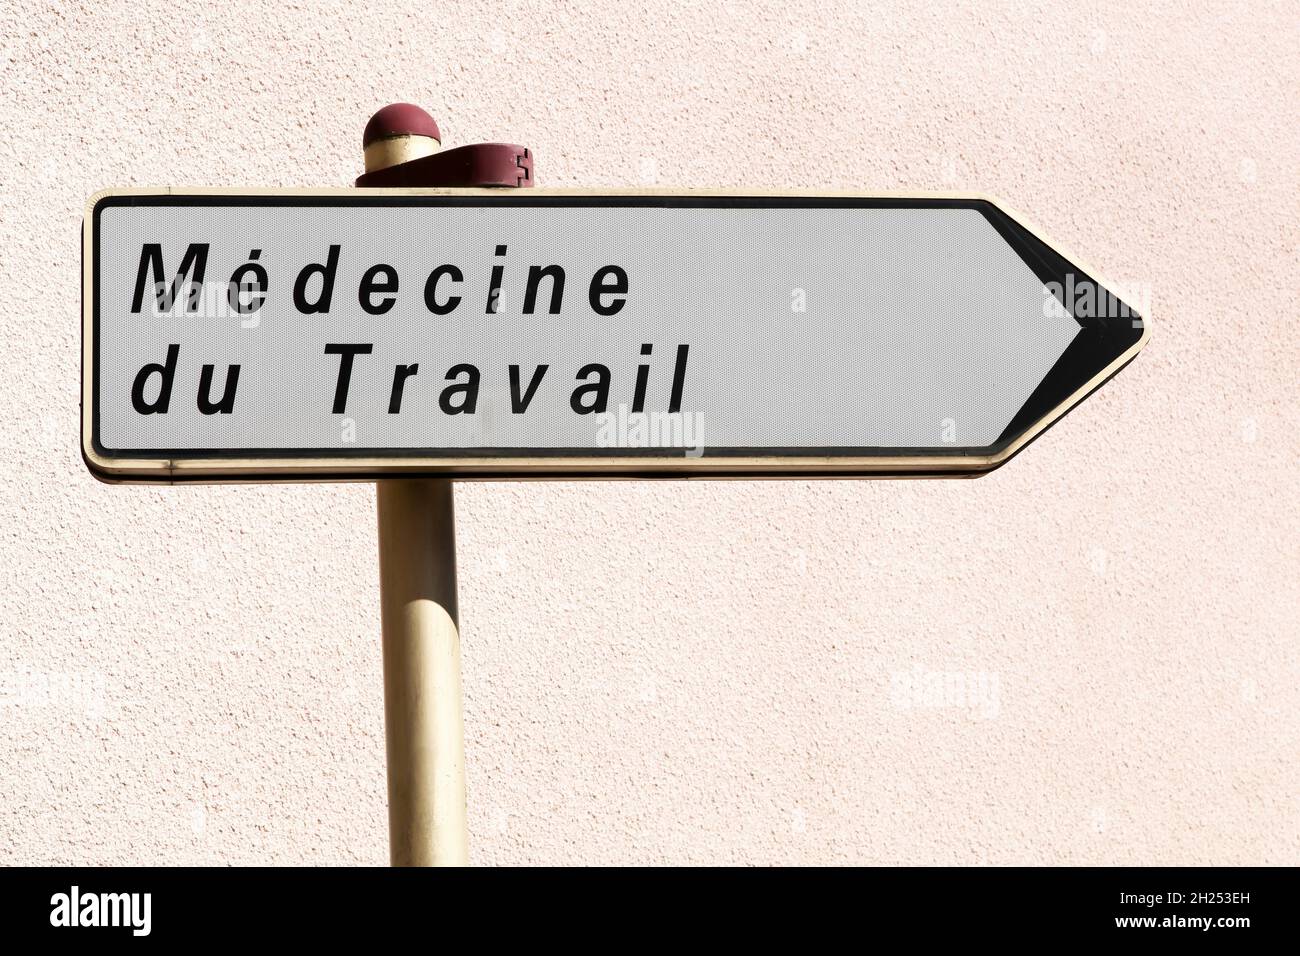 Arbeitsmedizinische Straßenschild namens Medecine du travail in französischer Sprache Stockfoto